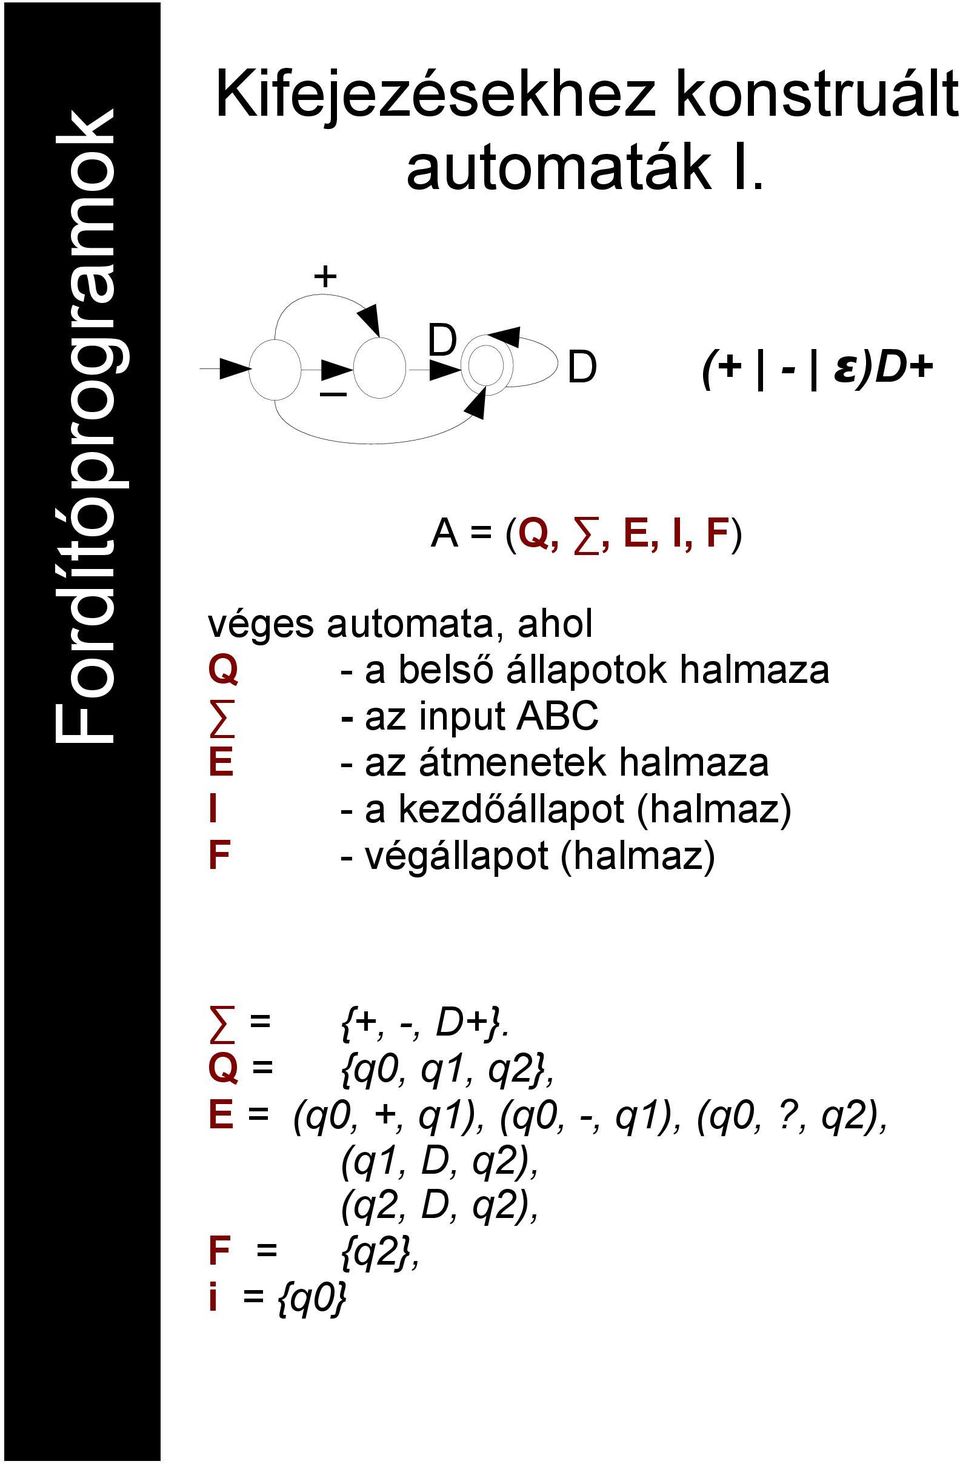 halmaza - az input ABC E - az átmenetek halmaza I - a kezdőállapot (halmaz) F -